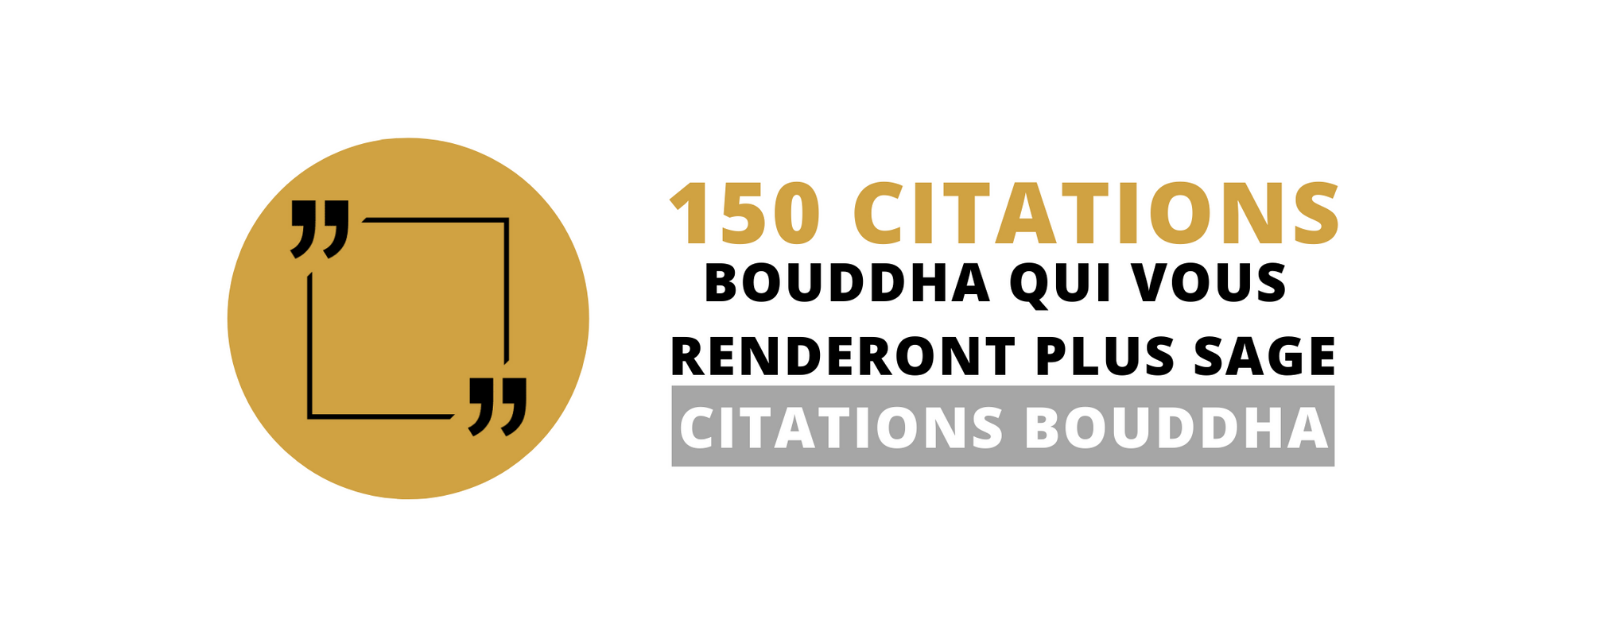 150 citations Bouddha qui vous rendront plus sage